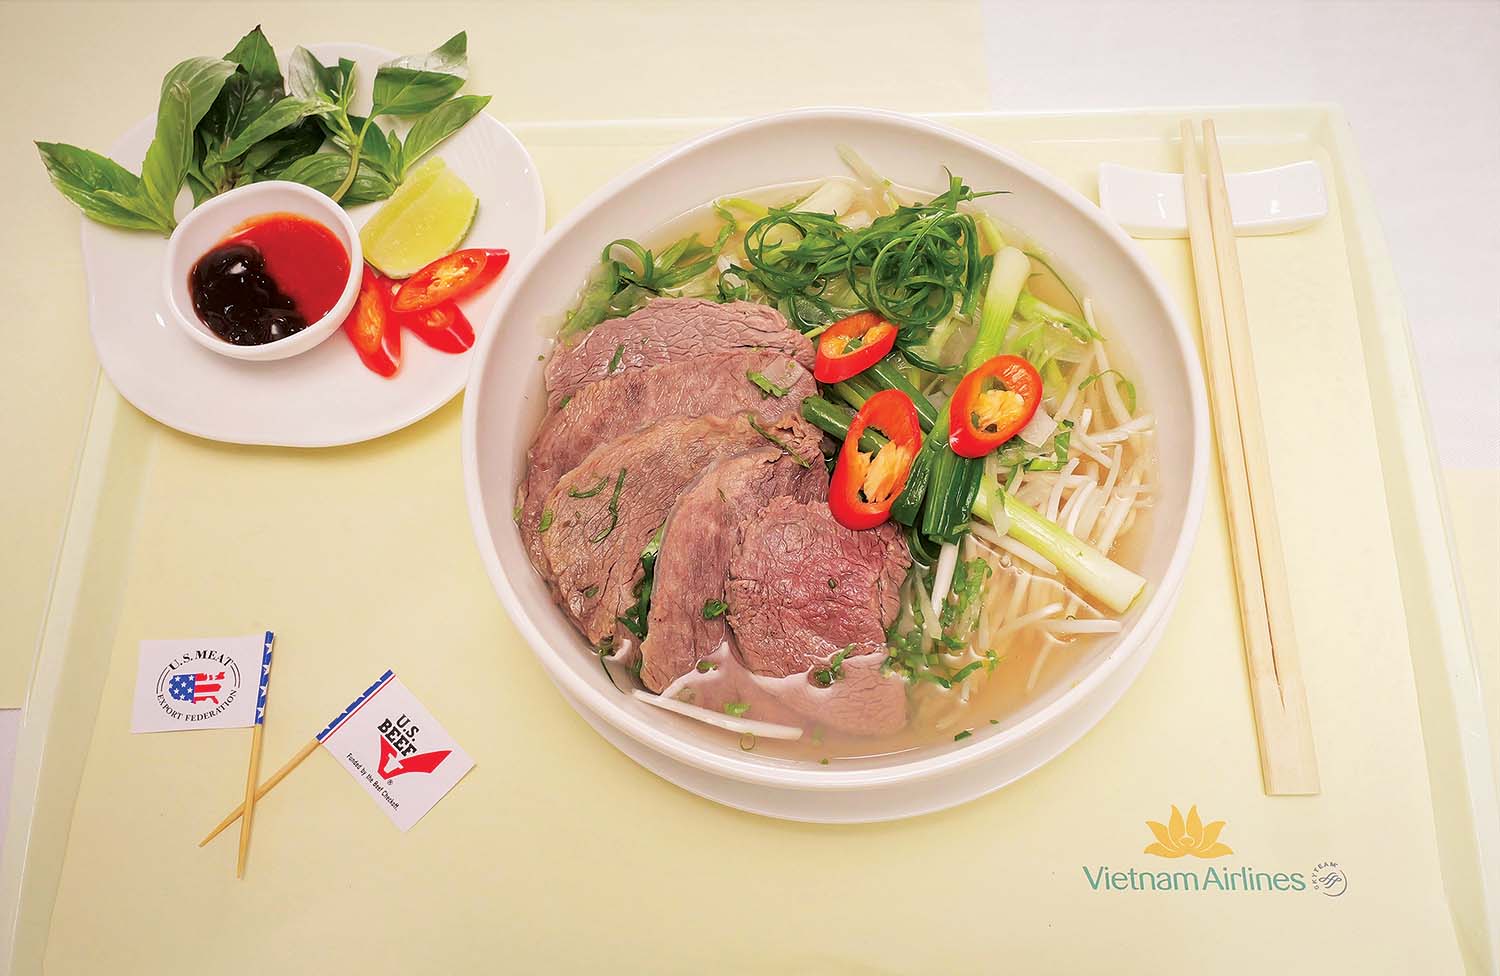 Món phở bò truyền thống được Vietnam Airlines phục vụ trên chuyến bay kỷ niệm 1 năm khai thác đường bay thẳng Việt Nam - Hoa Kỳ, tháng 11/2022